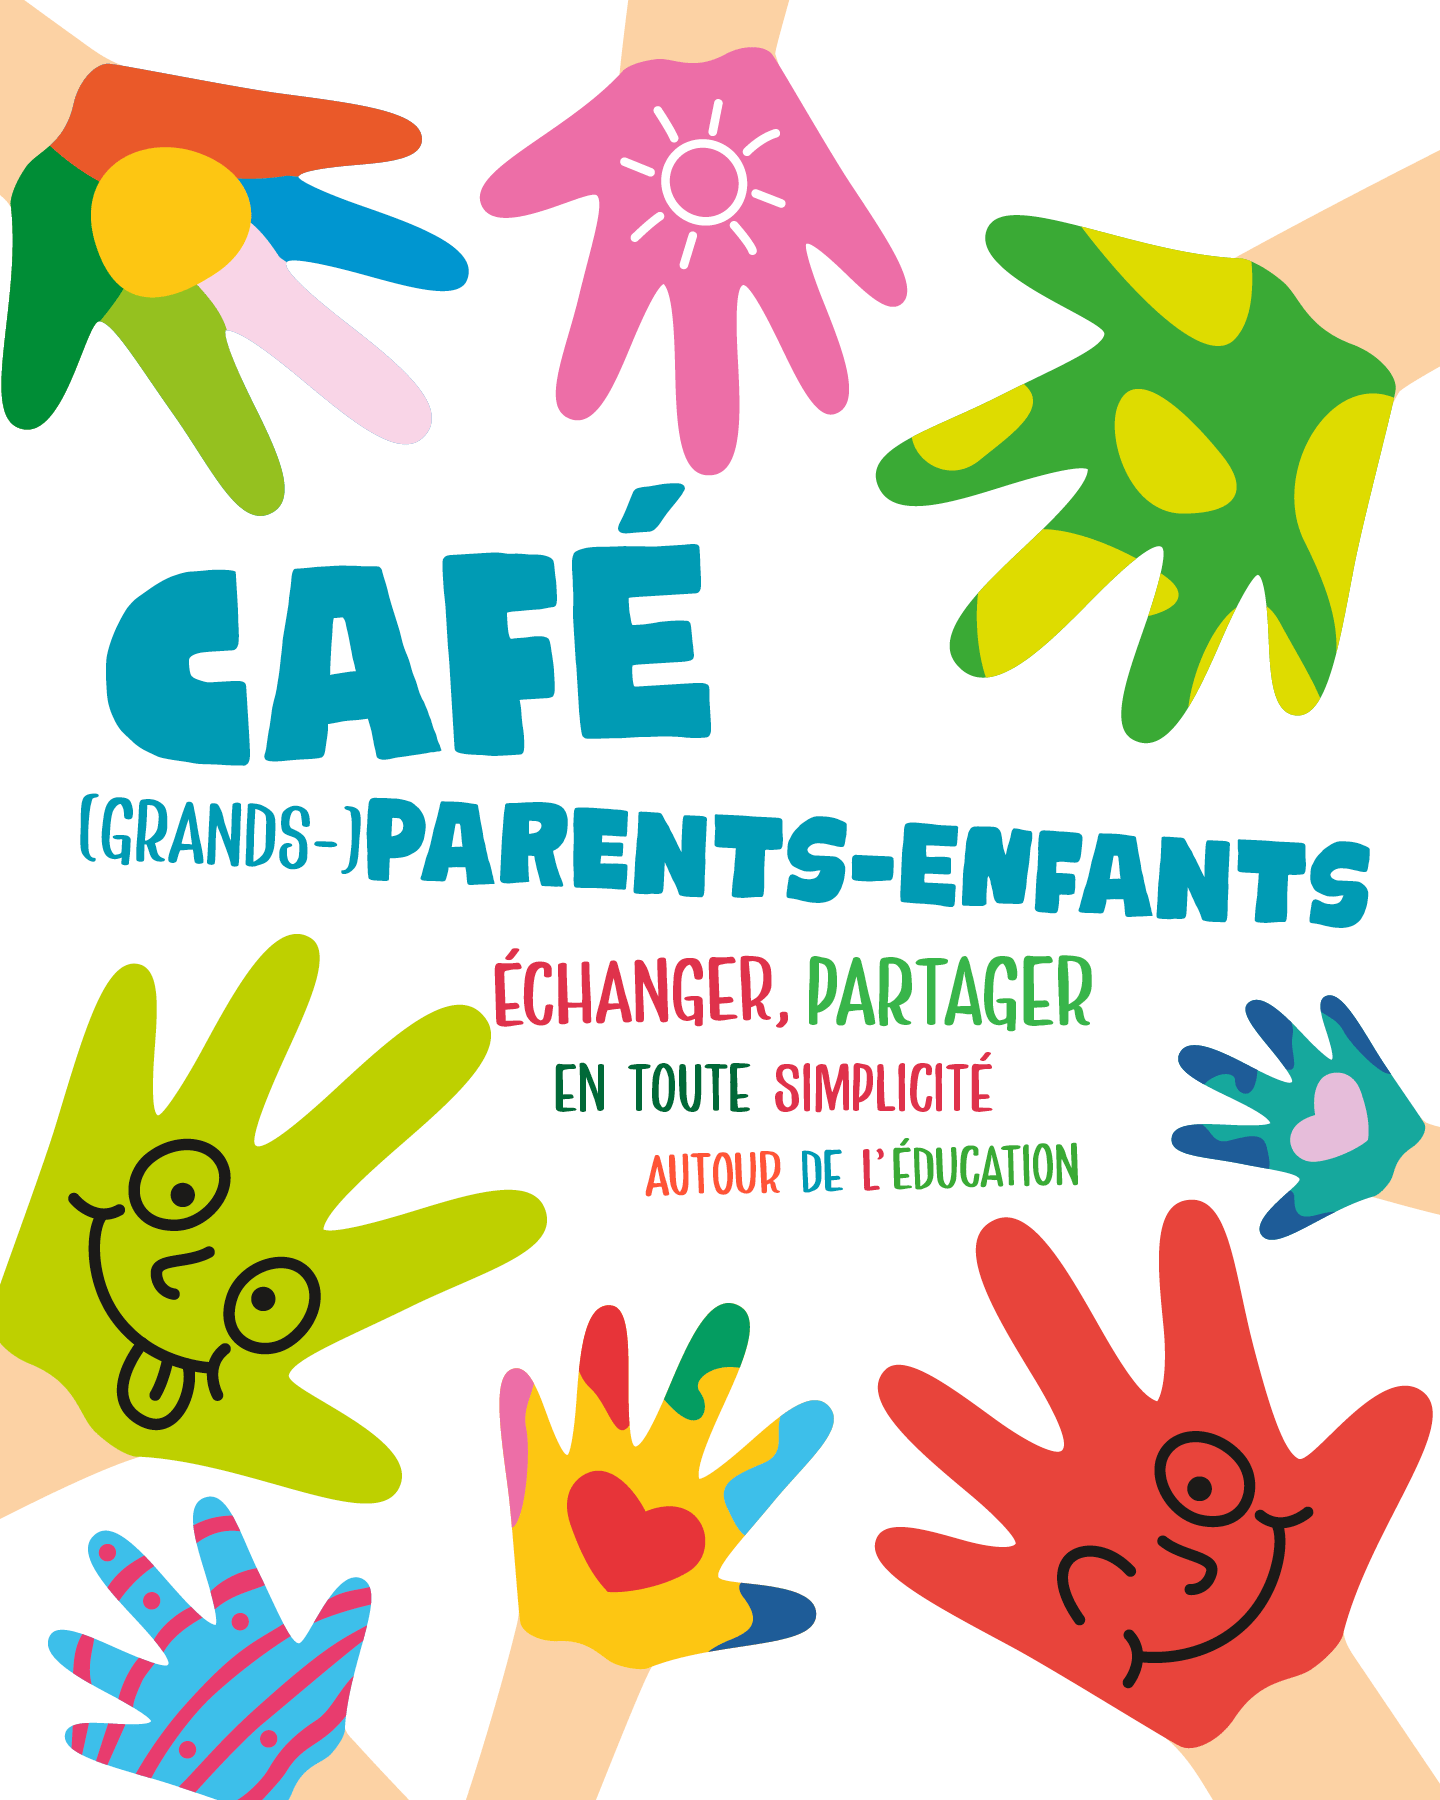 Café (grands-)parents-enfants